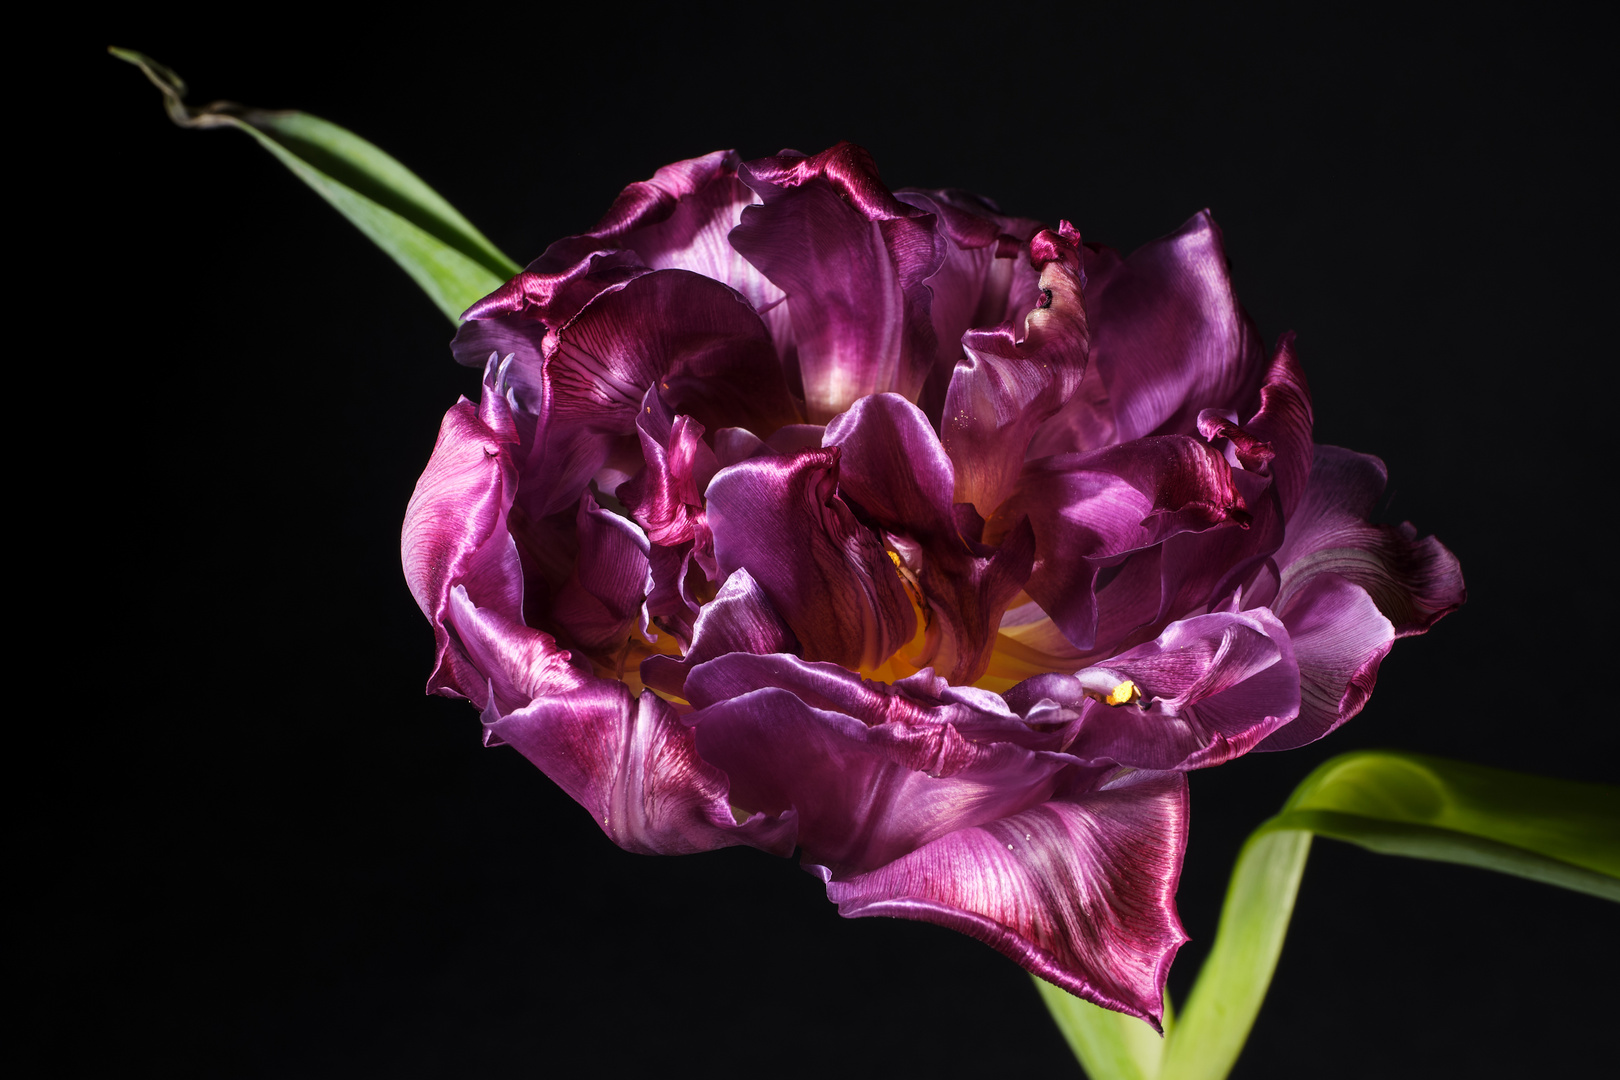 violette Tulpe